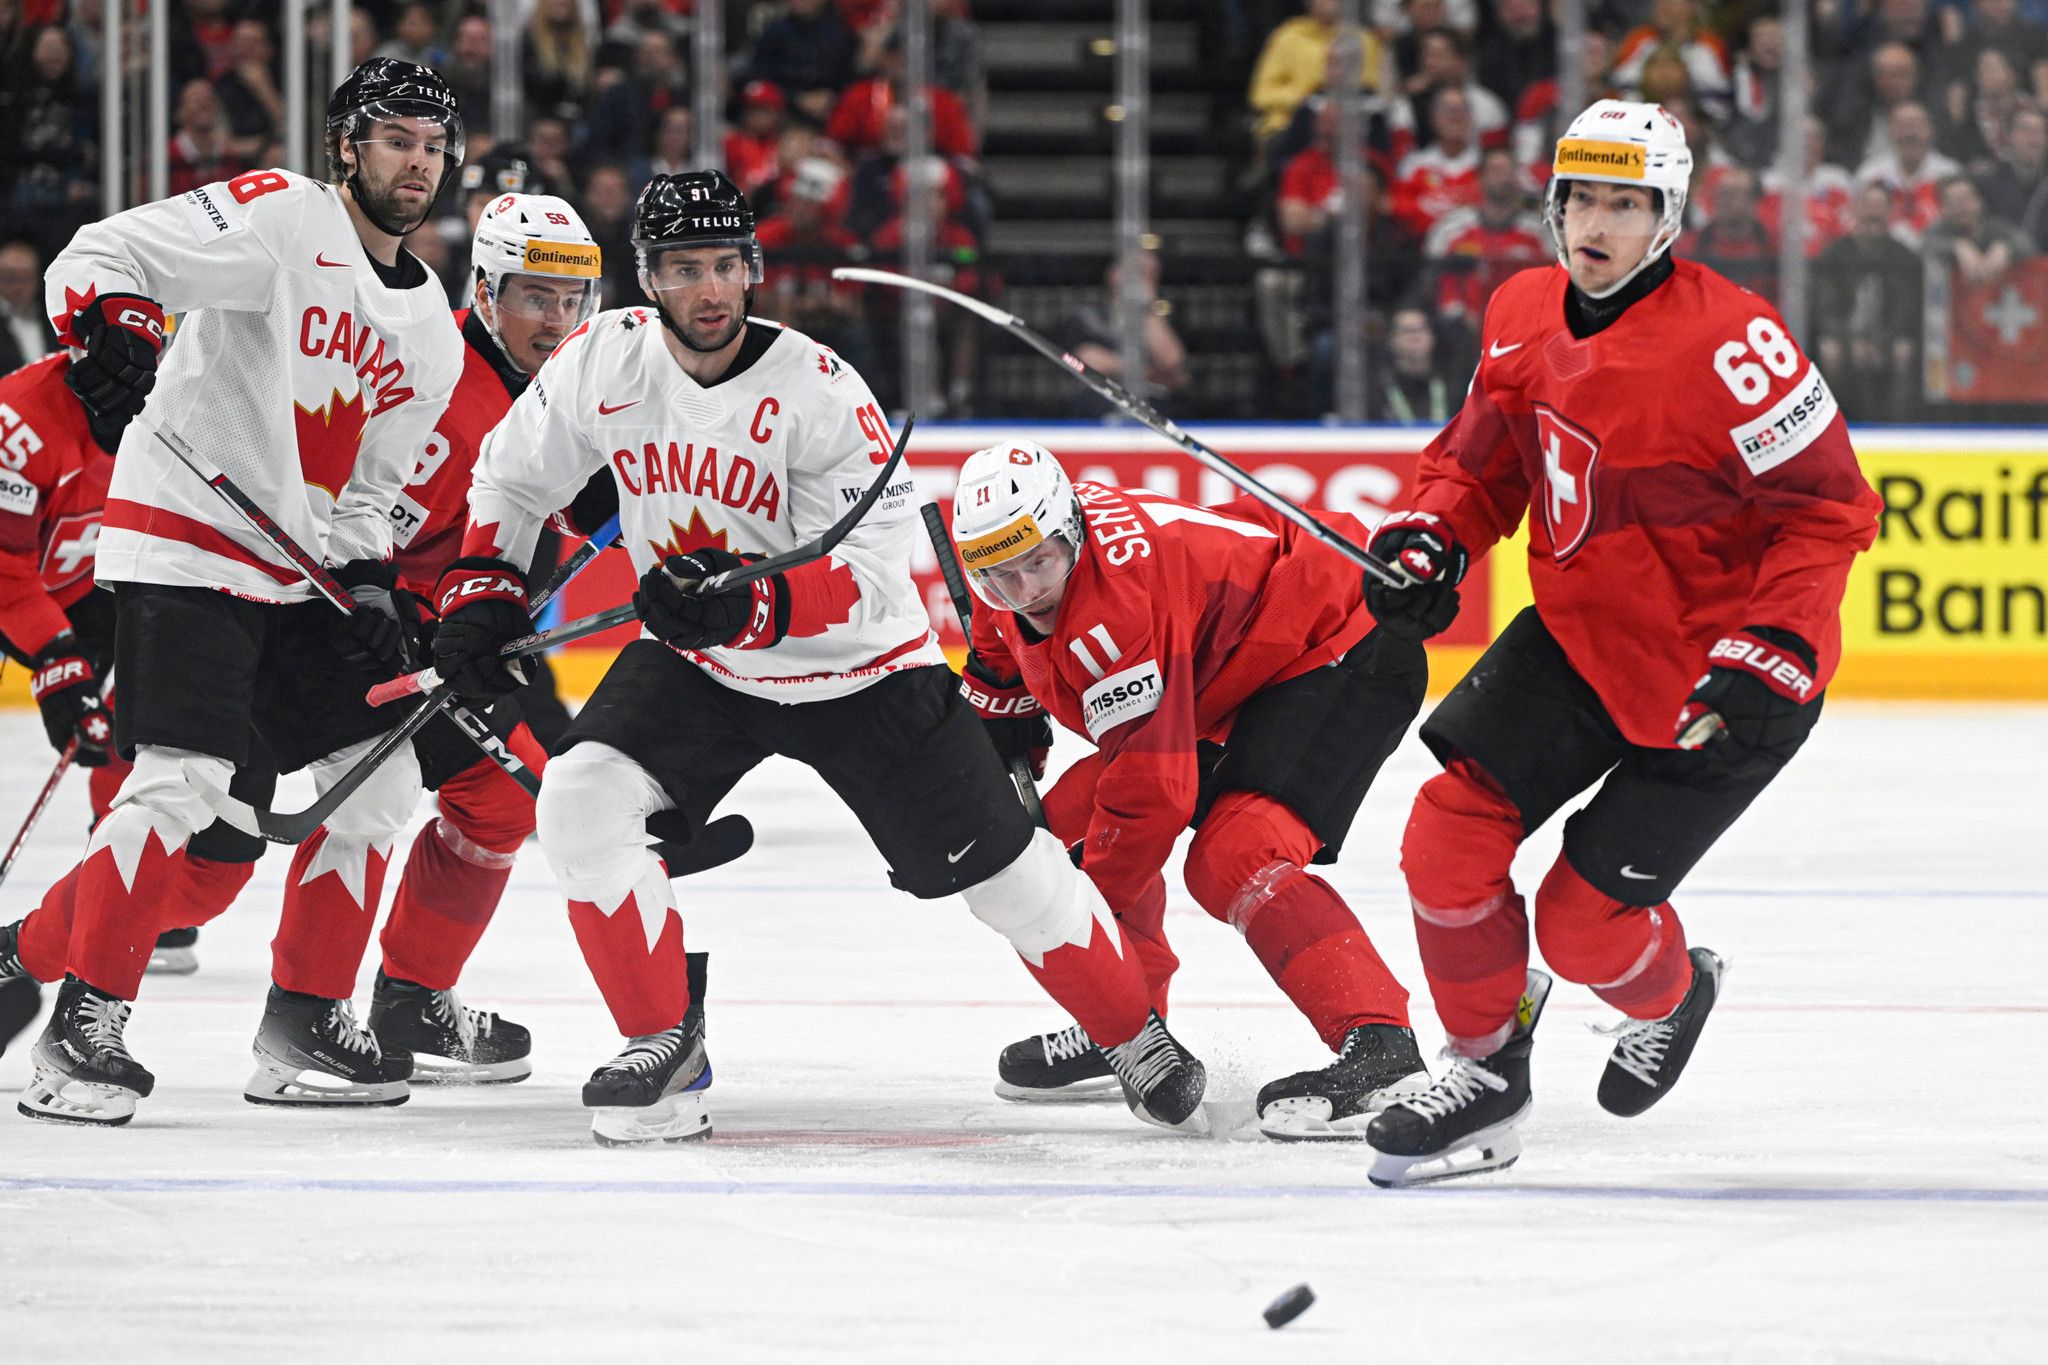 Pour John Tavares, les fans suisses ont boosté le Canada